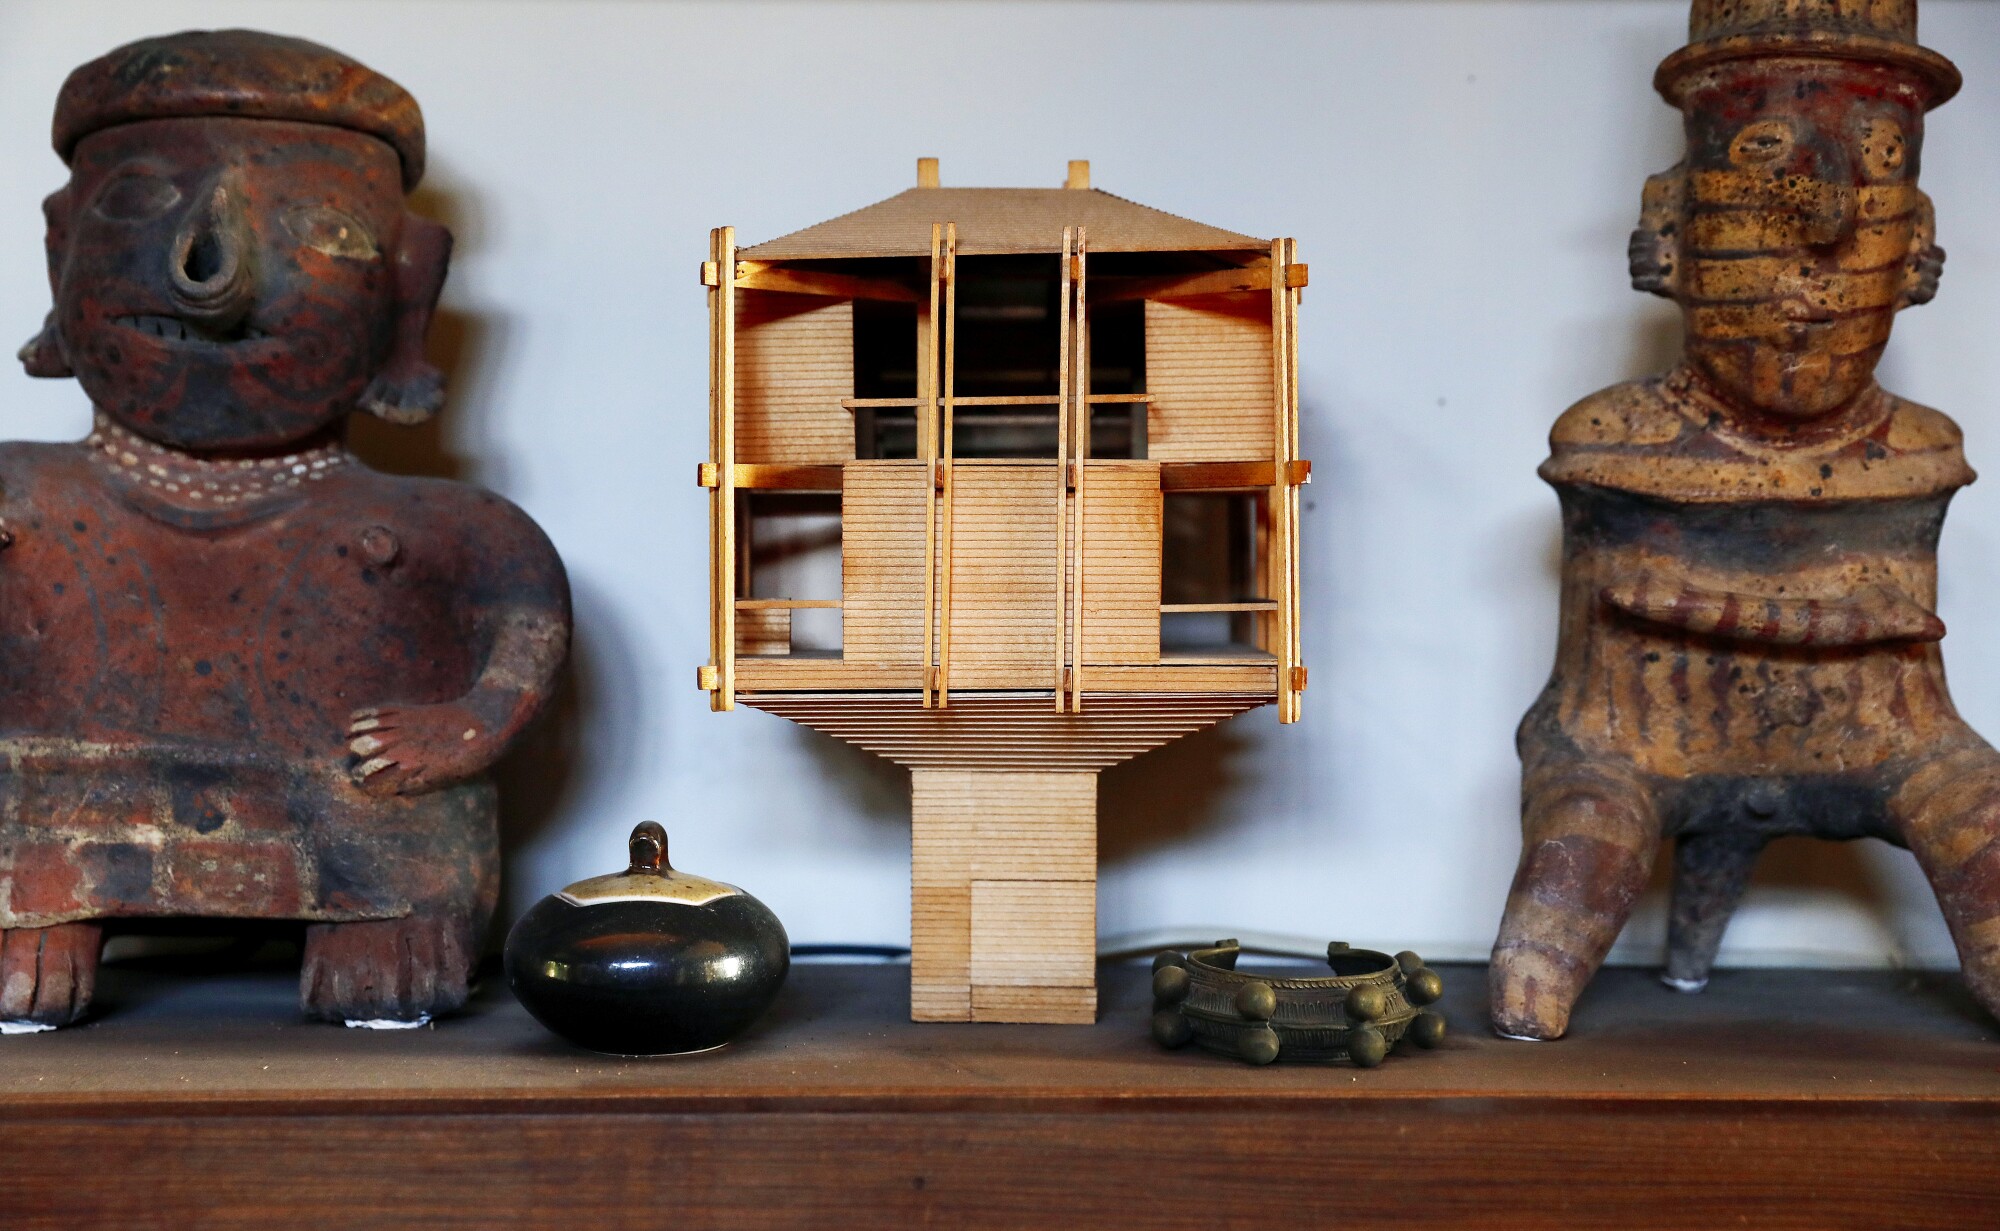 El modelo de madera de Bernard Judge de la casa del árbol se encuentra en un estante entre figuras de estilo precolombino.